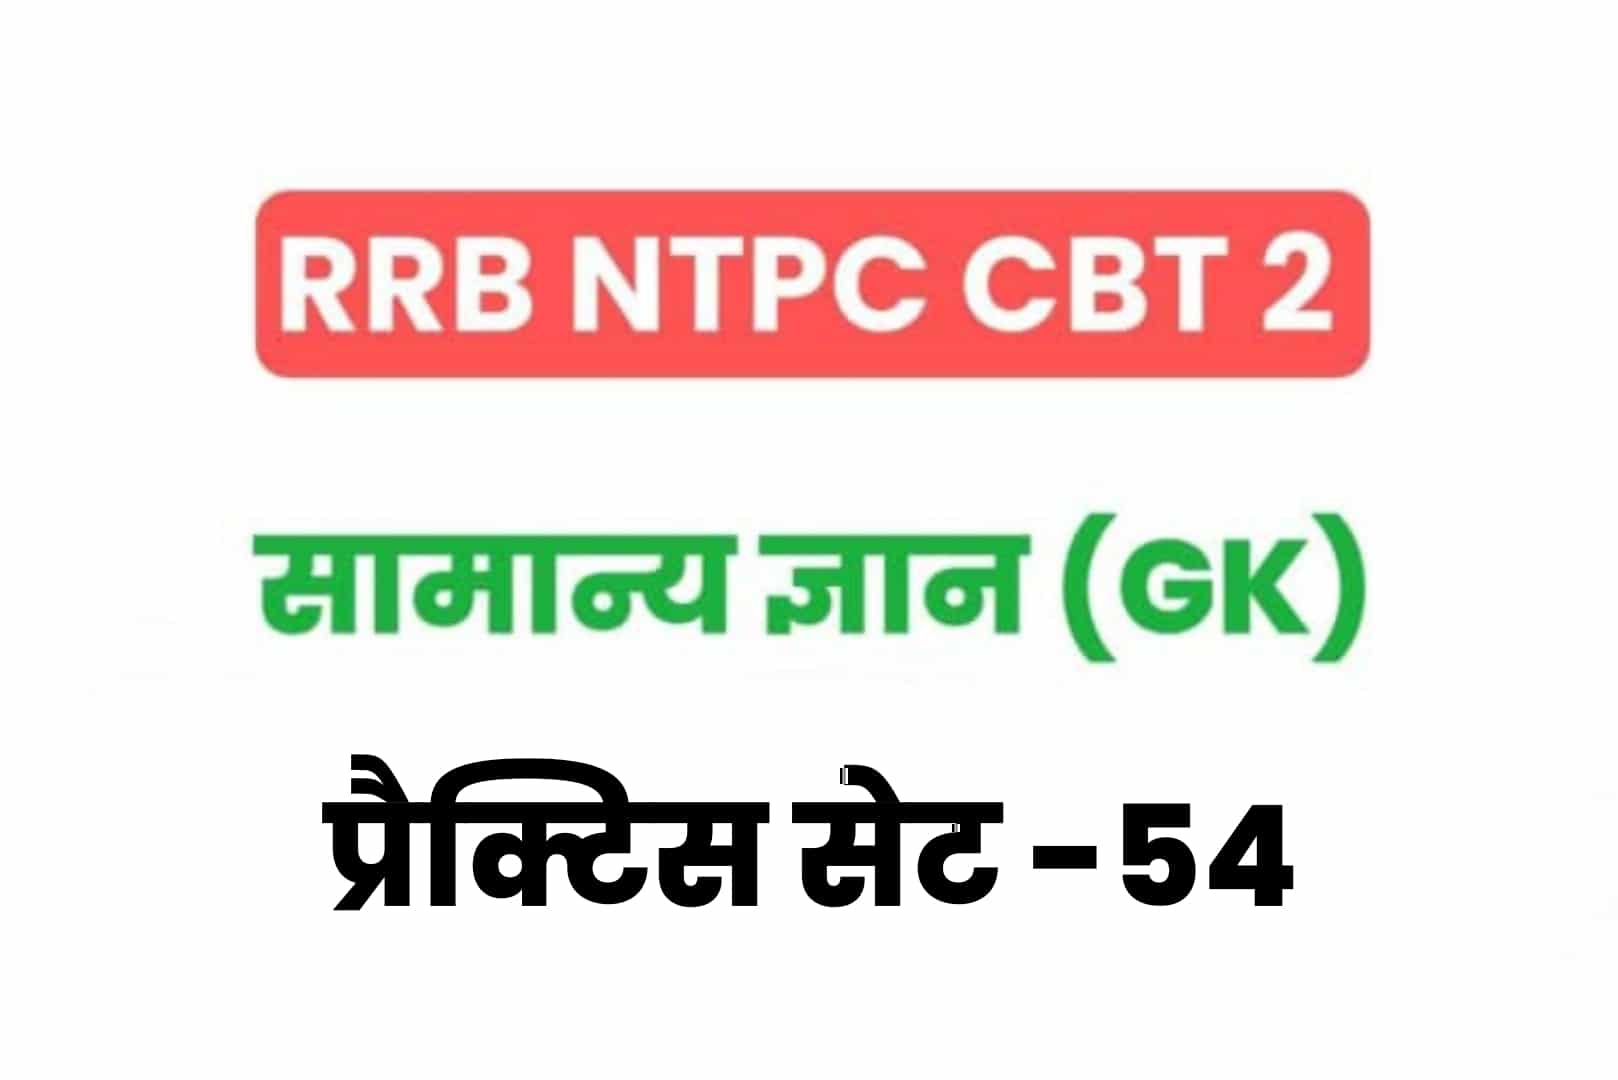 RRB NTPC CBT 2 GK प्रैक्टिस सेट 54: परीक्षा में जानें से पहले जरूर पढ़ लें सामान्य ज्ञान के 25 मुख्य MCQ